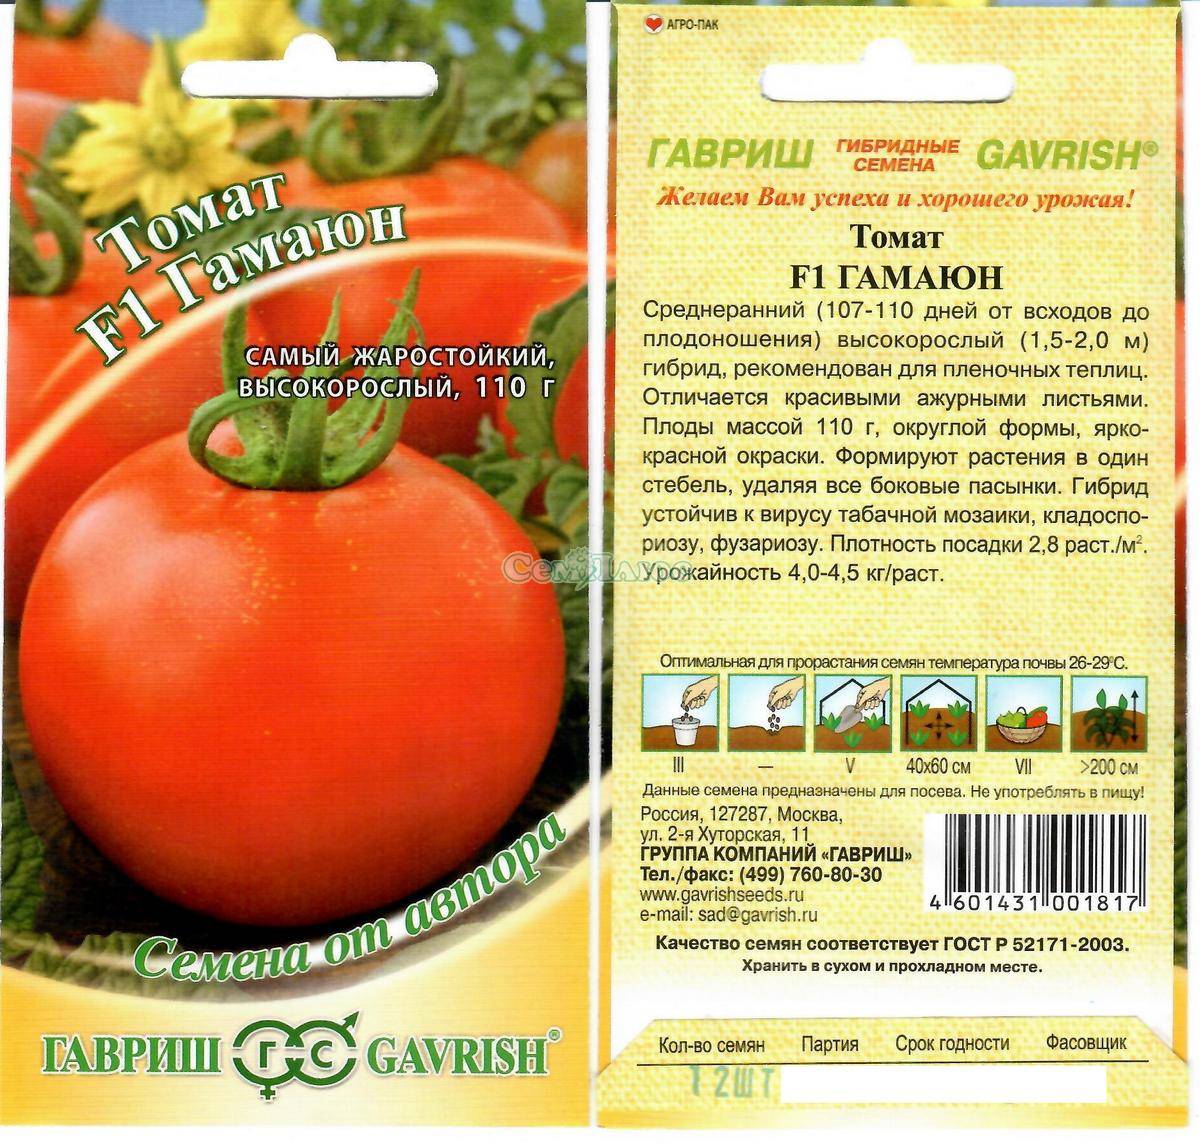 Описание томата Гамаюн, урожайность и потребительские свойства